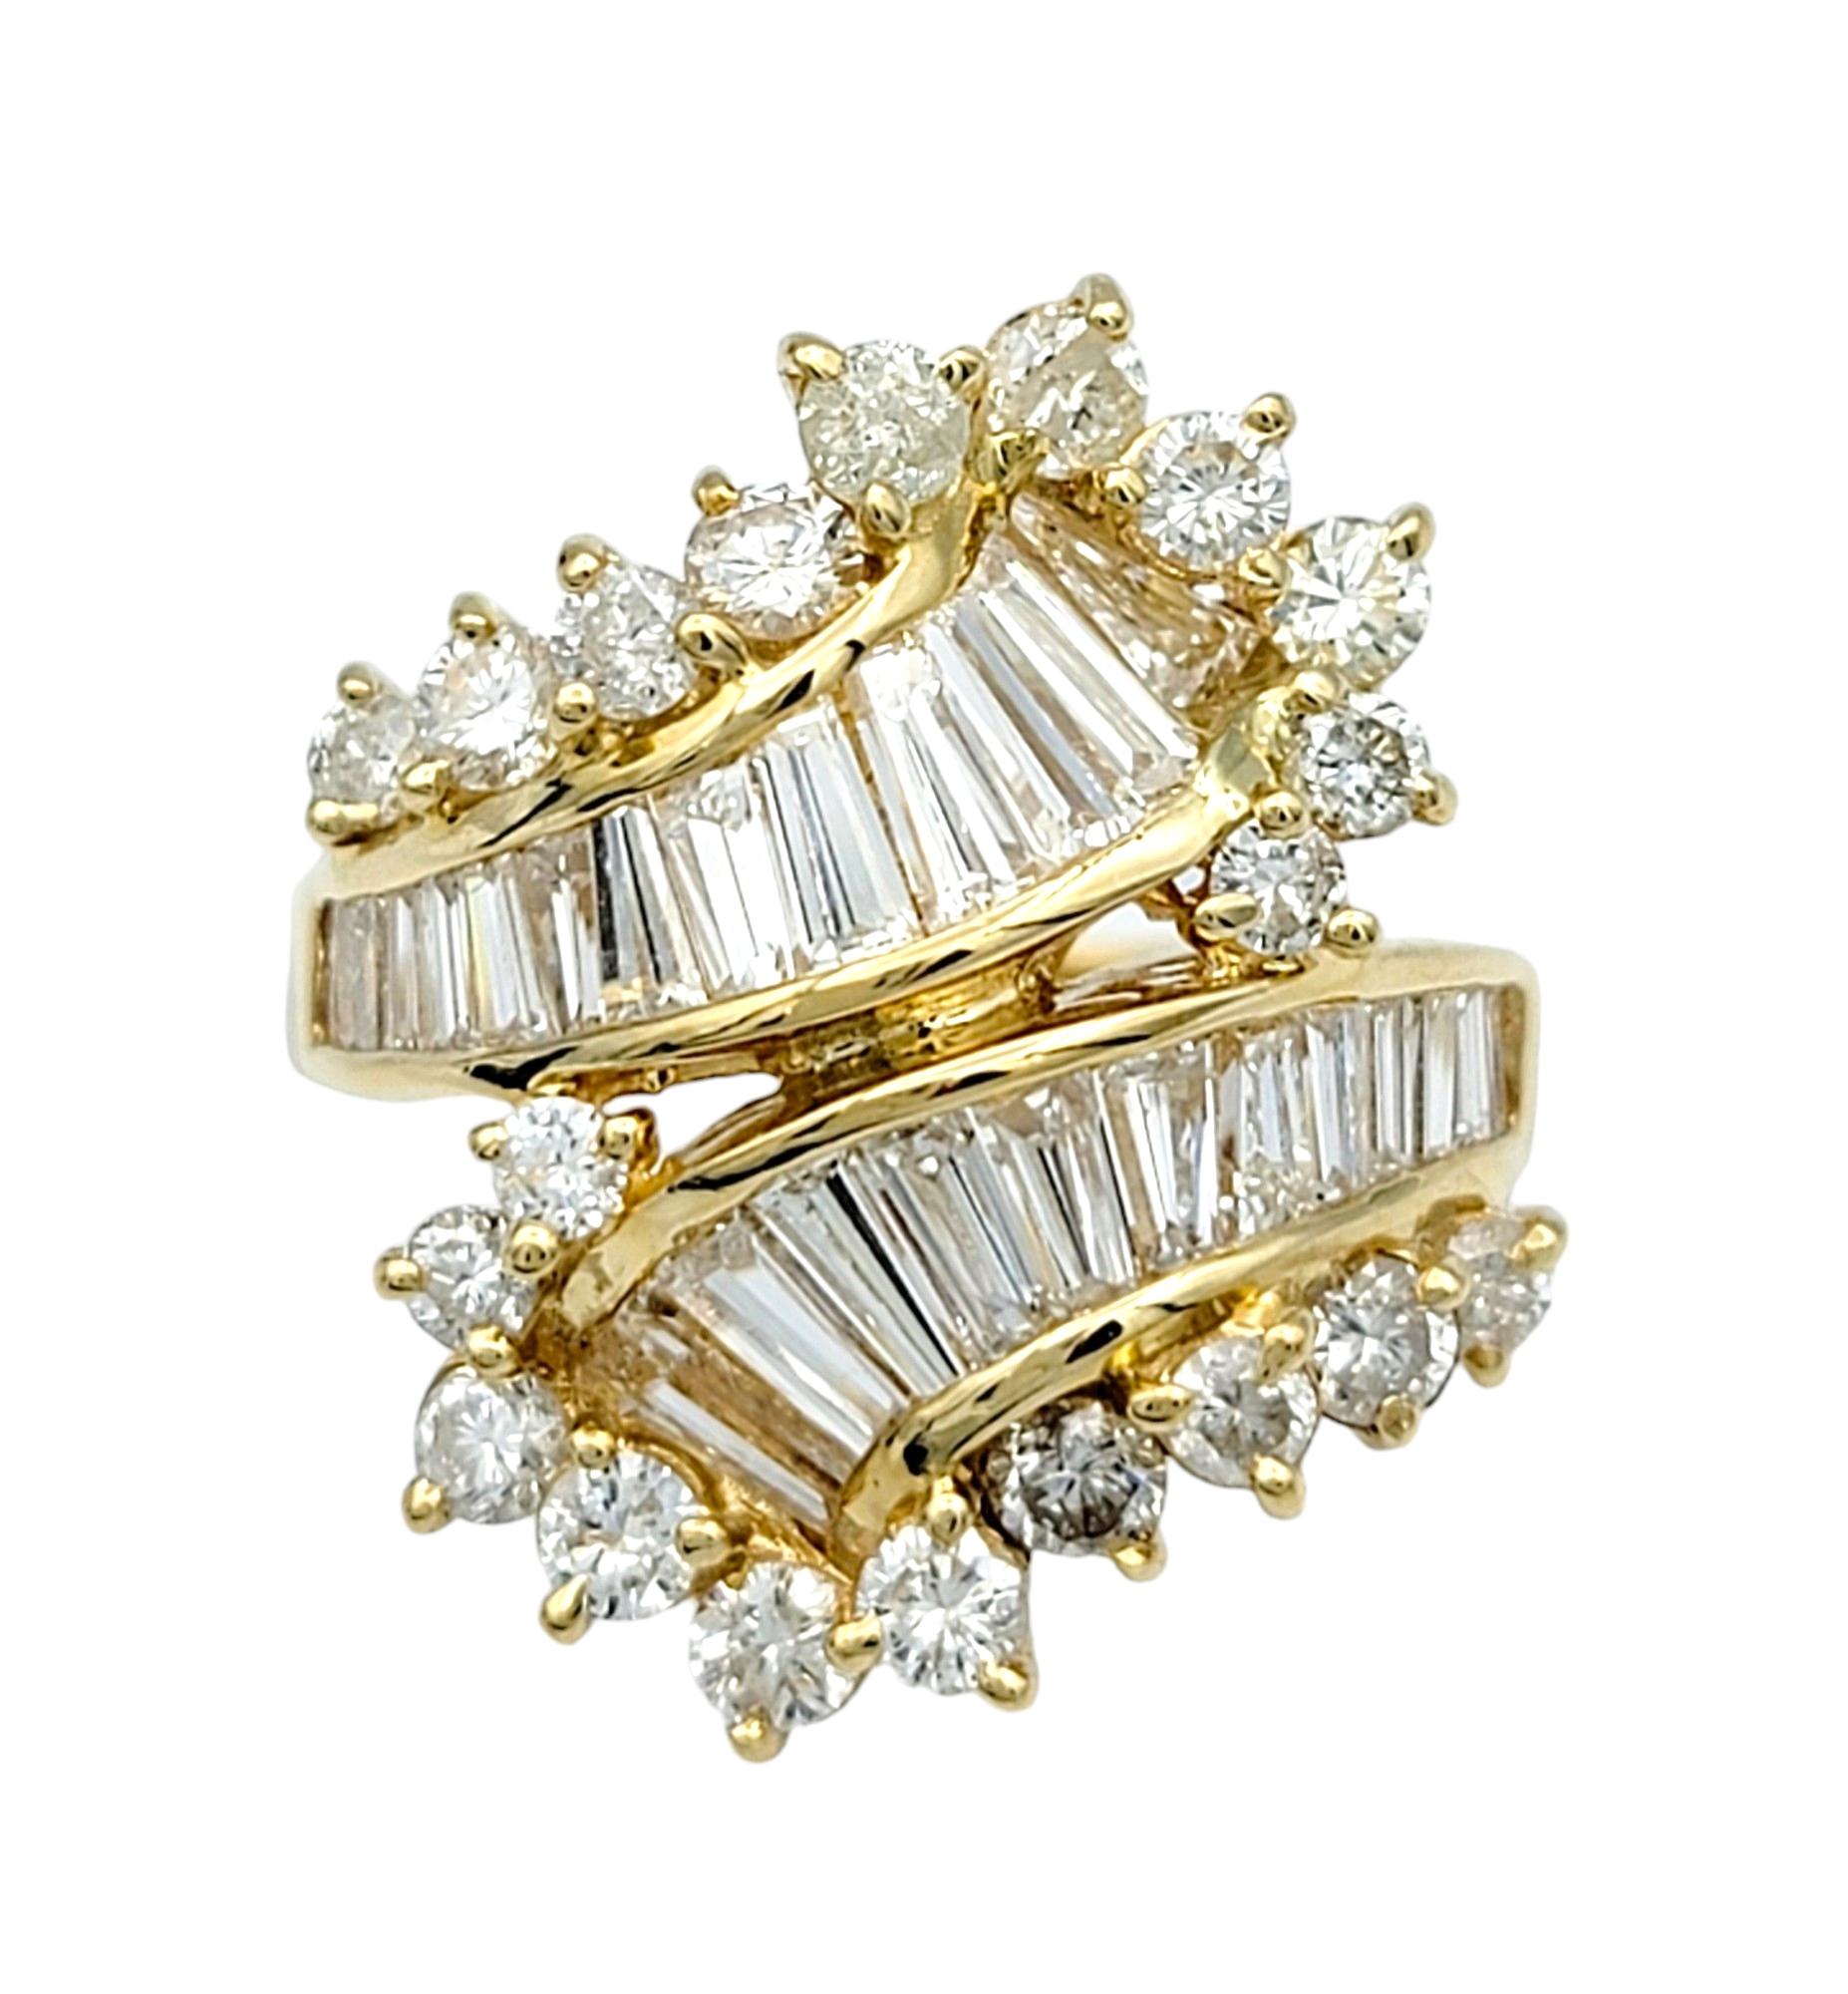 Ringgröße: 5.25

Dieser bezaubernde Diamantring aus glänzendem 14-karätigem Gelbgold verkörpert schlichte Eleganz mit einem Hauch von modernem Flair. Der Ring ahmt die anmutige Bewegung eines Bypasses nach und besticht durch eine faszinierende